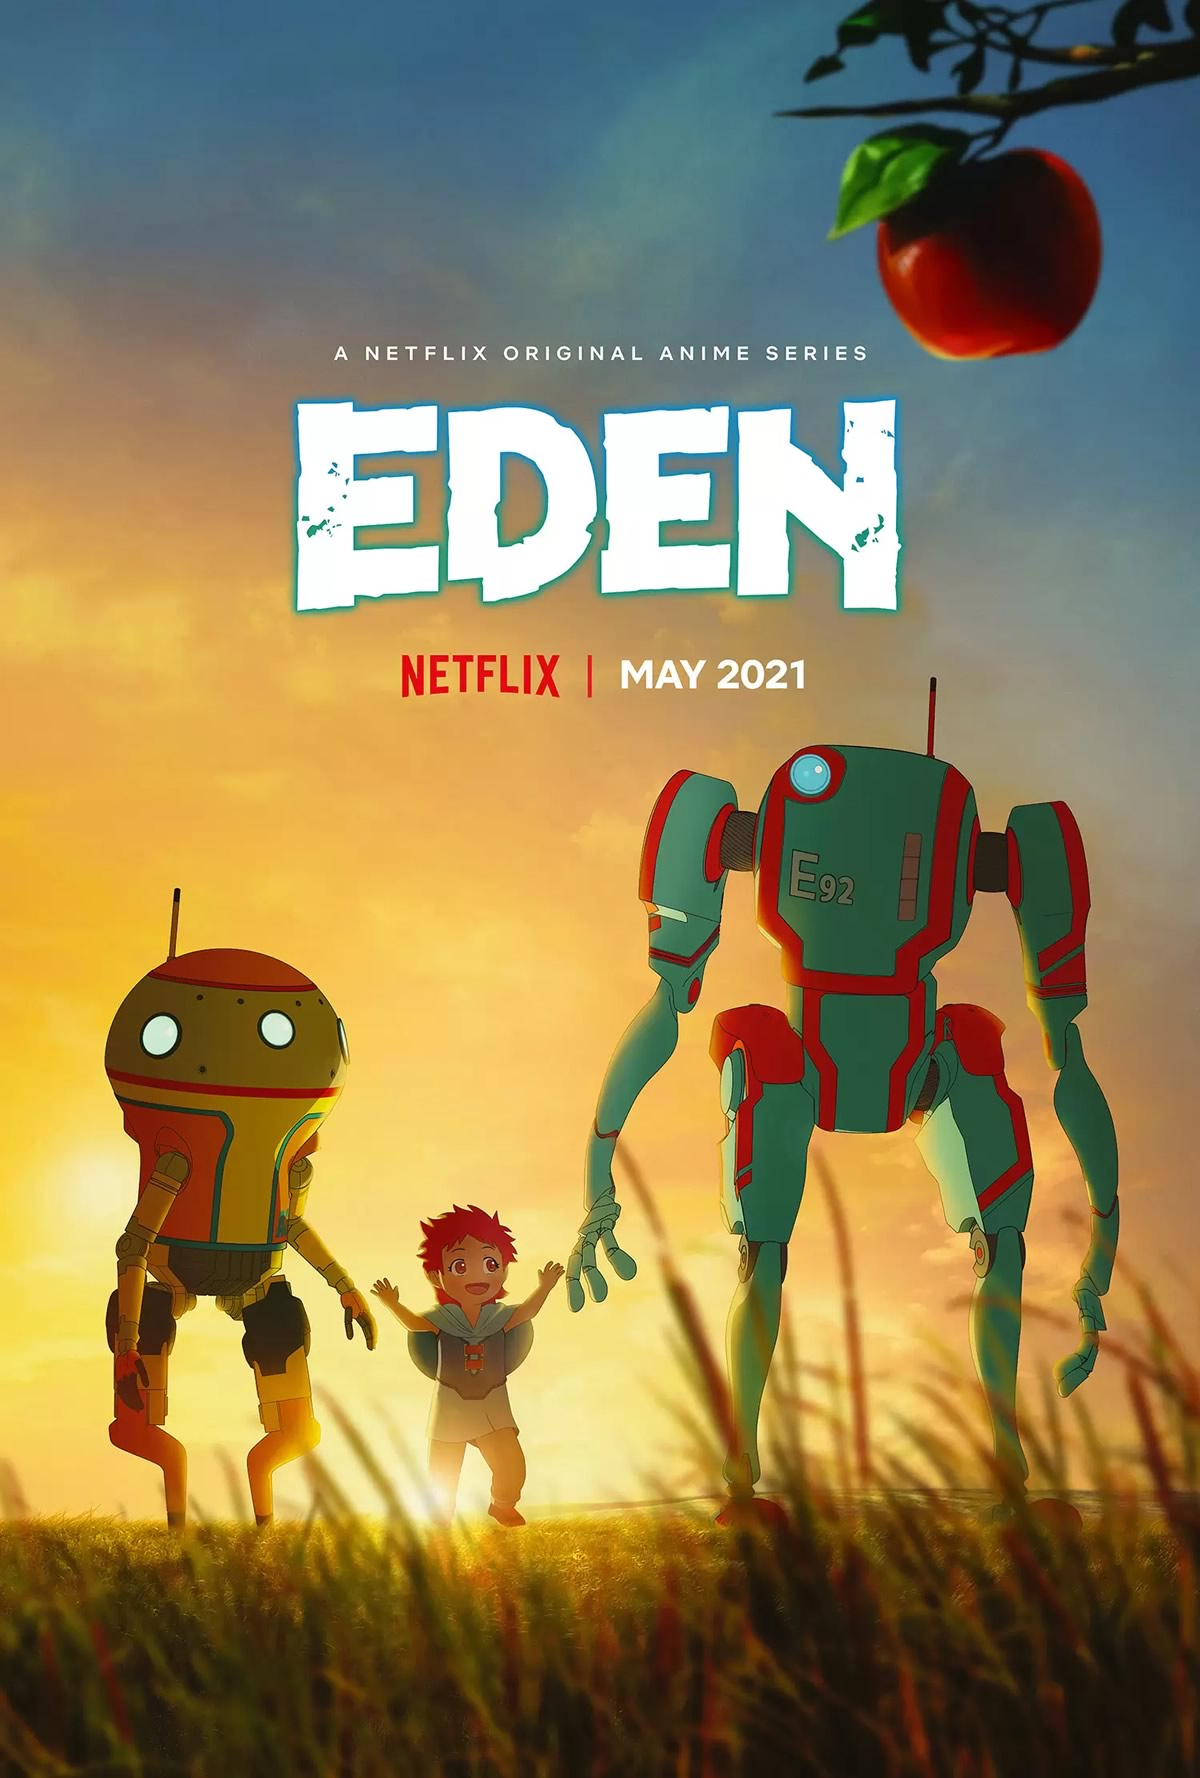 EDEN | Anime de ficção científica tem trailer e data de lançamento na Netflix